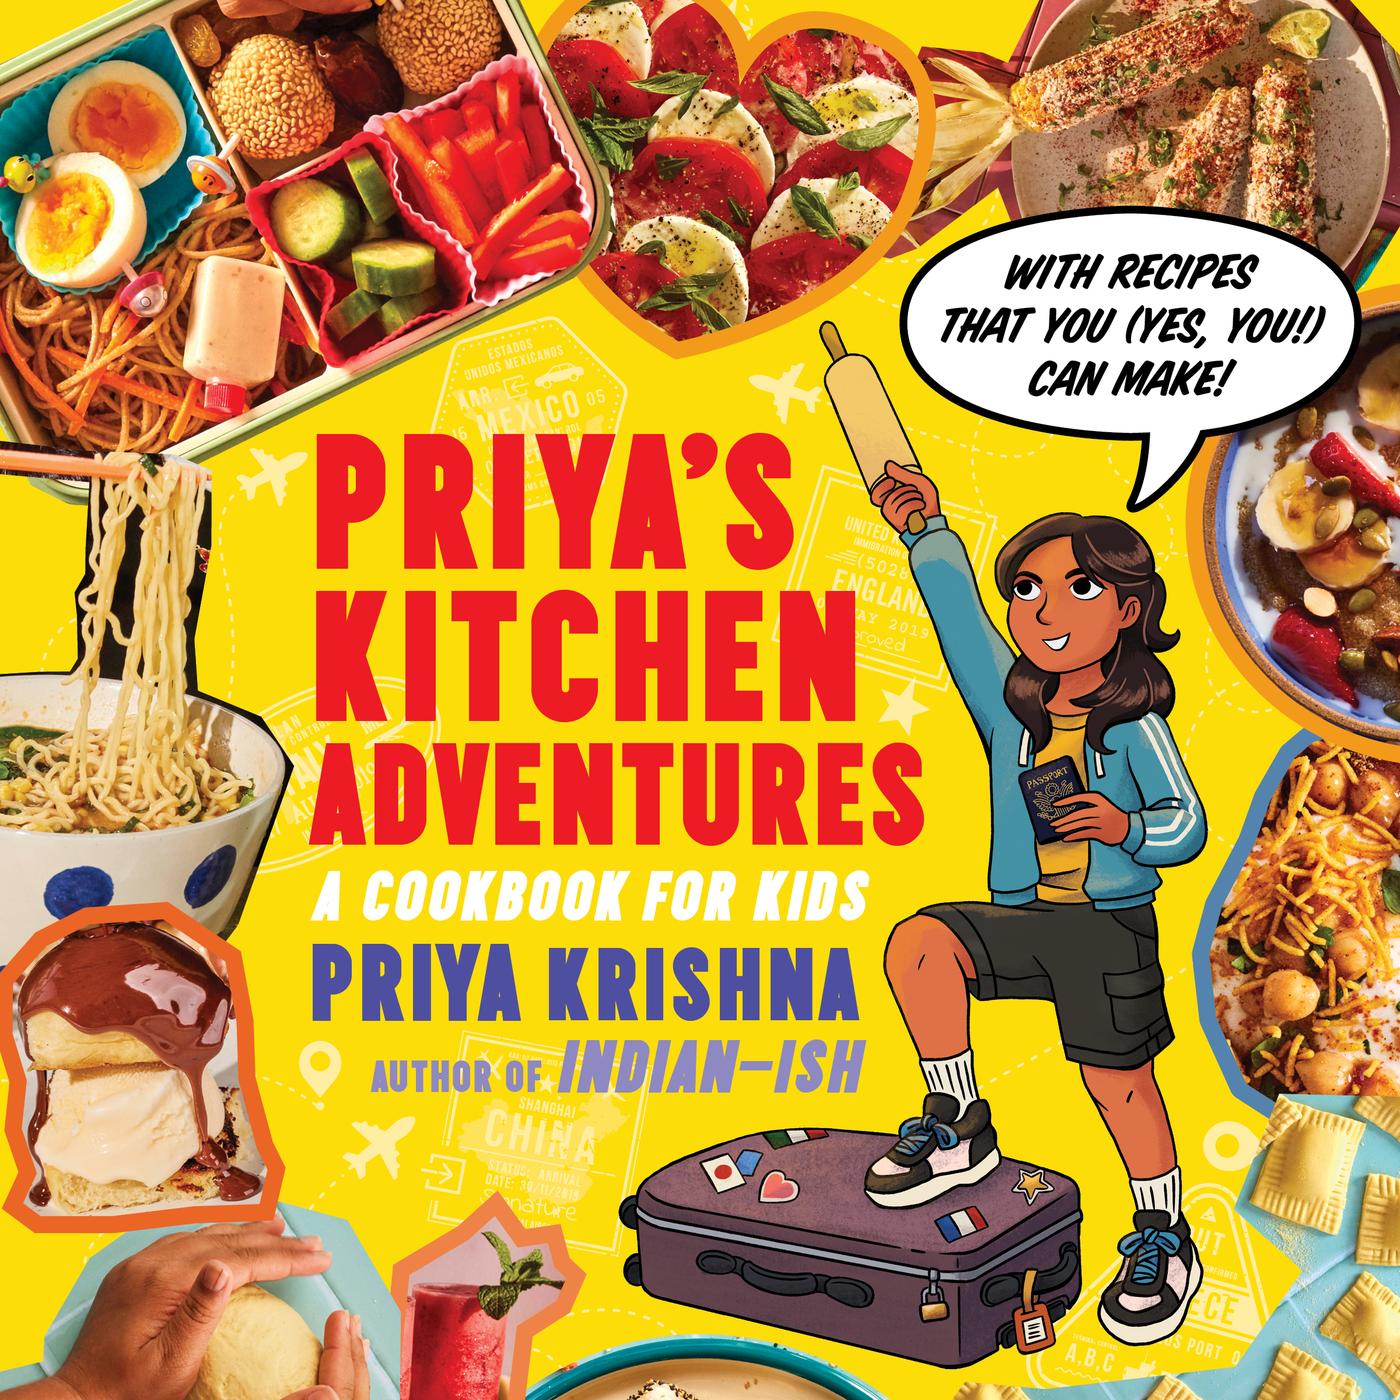 Priya Krishna's New Cookbook for Kids